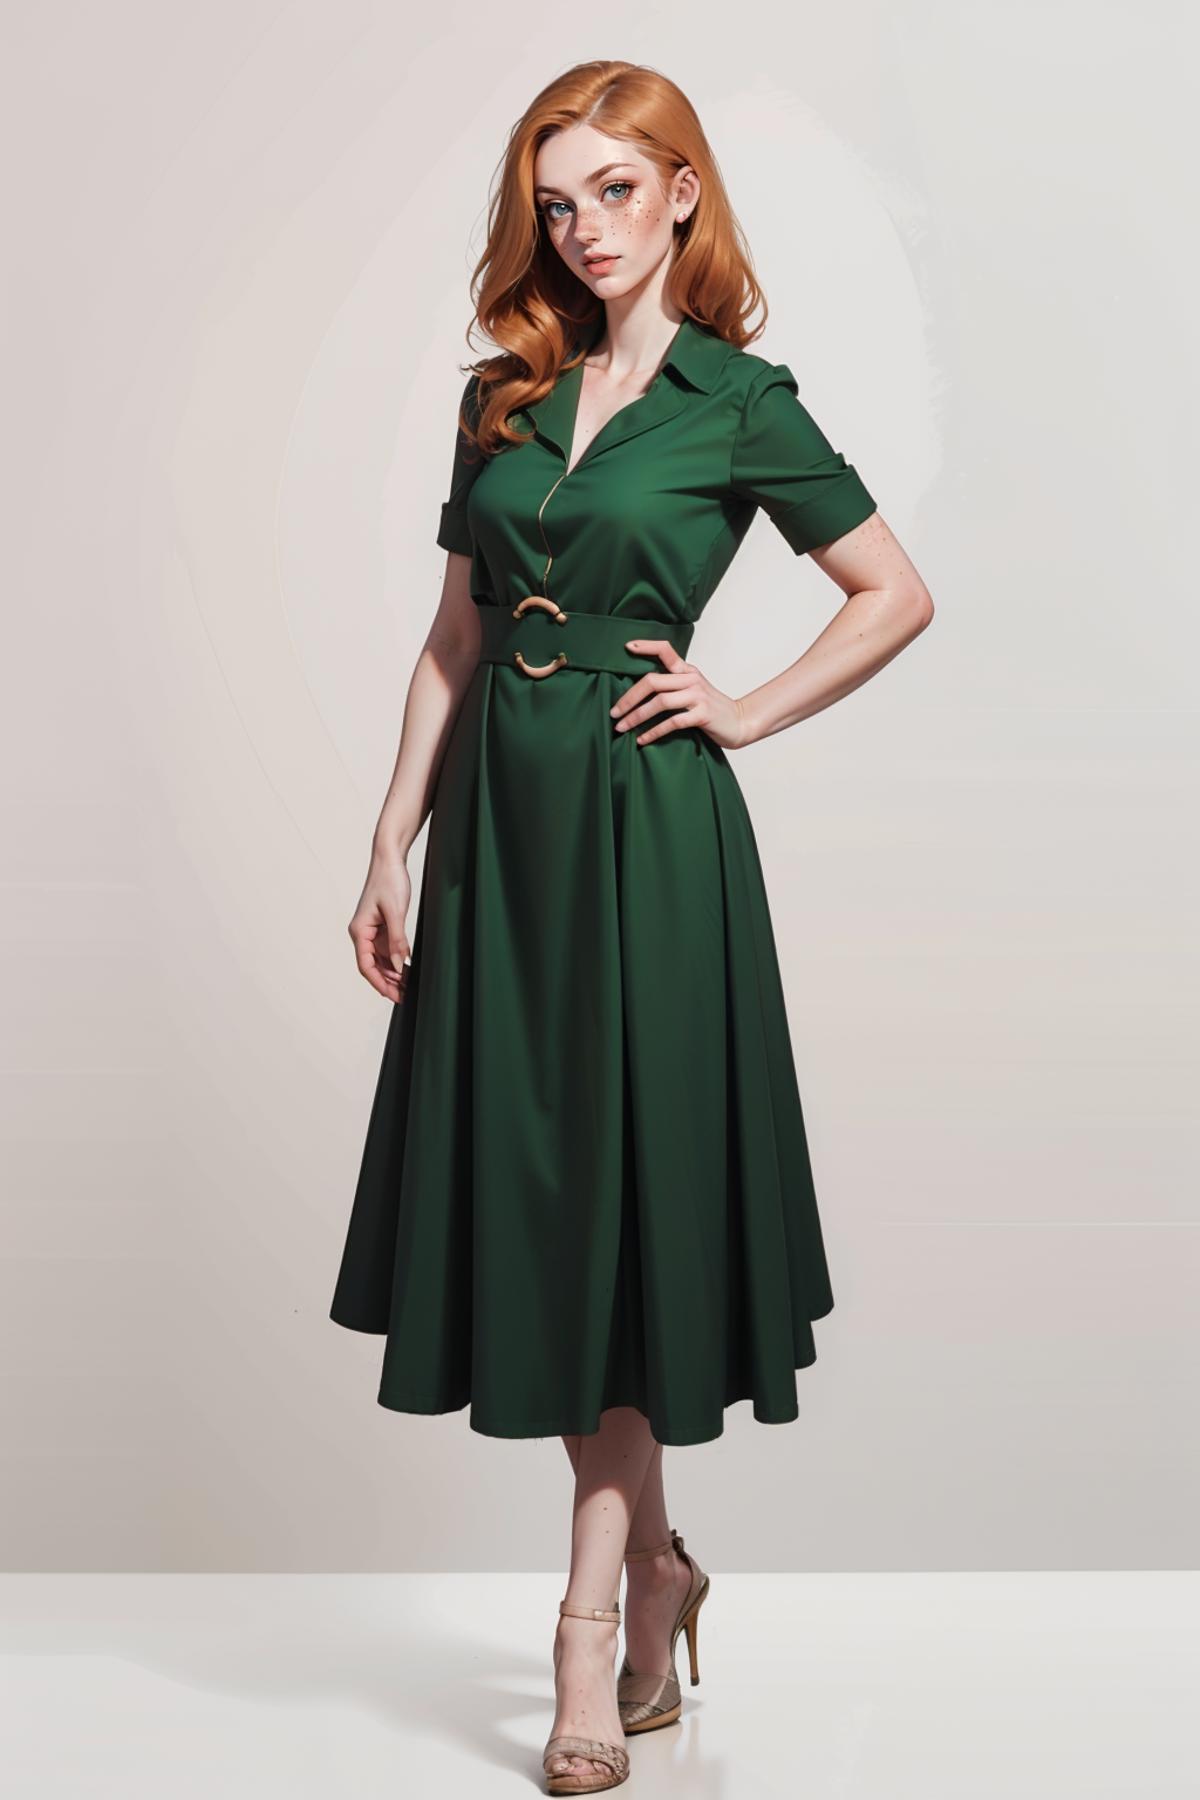 Vintage Lapel Dress image by freckledvixon